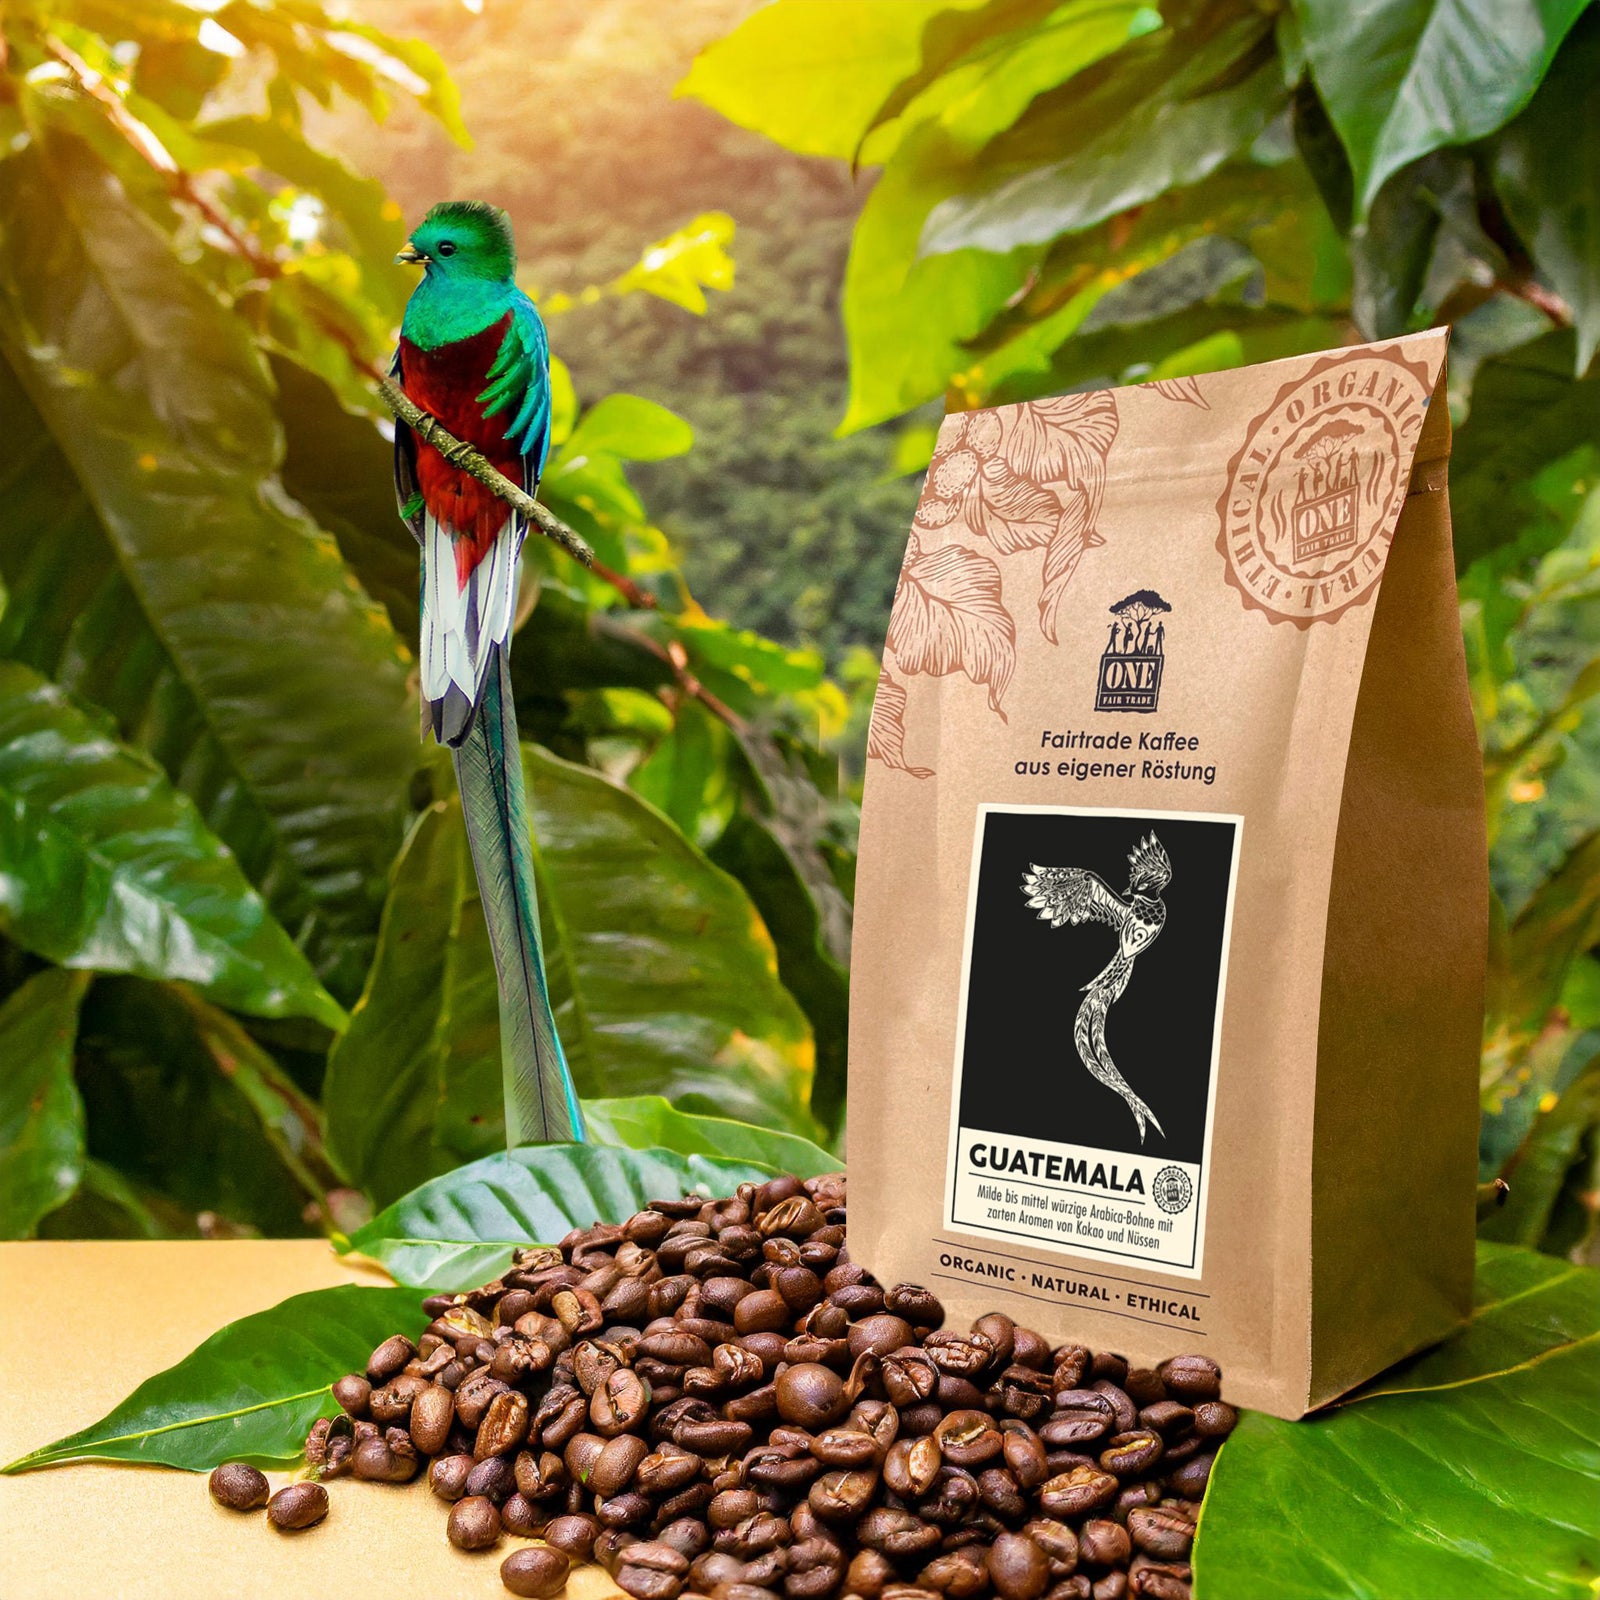 Guatemala Kaffee Tüte mit fairtrade Kaffeebohnen und Papagei als Dekoration. Der Hintergrund ist verschwommener Urwald.